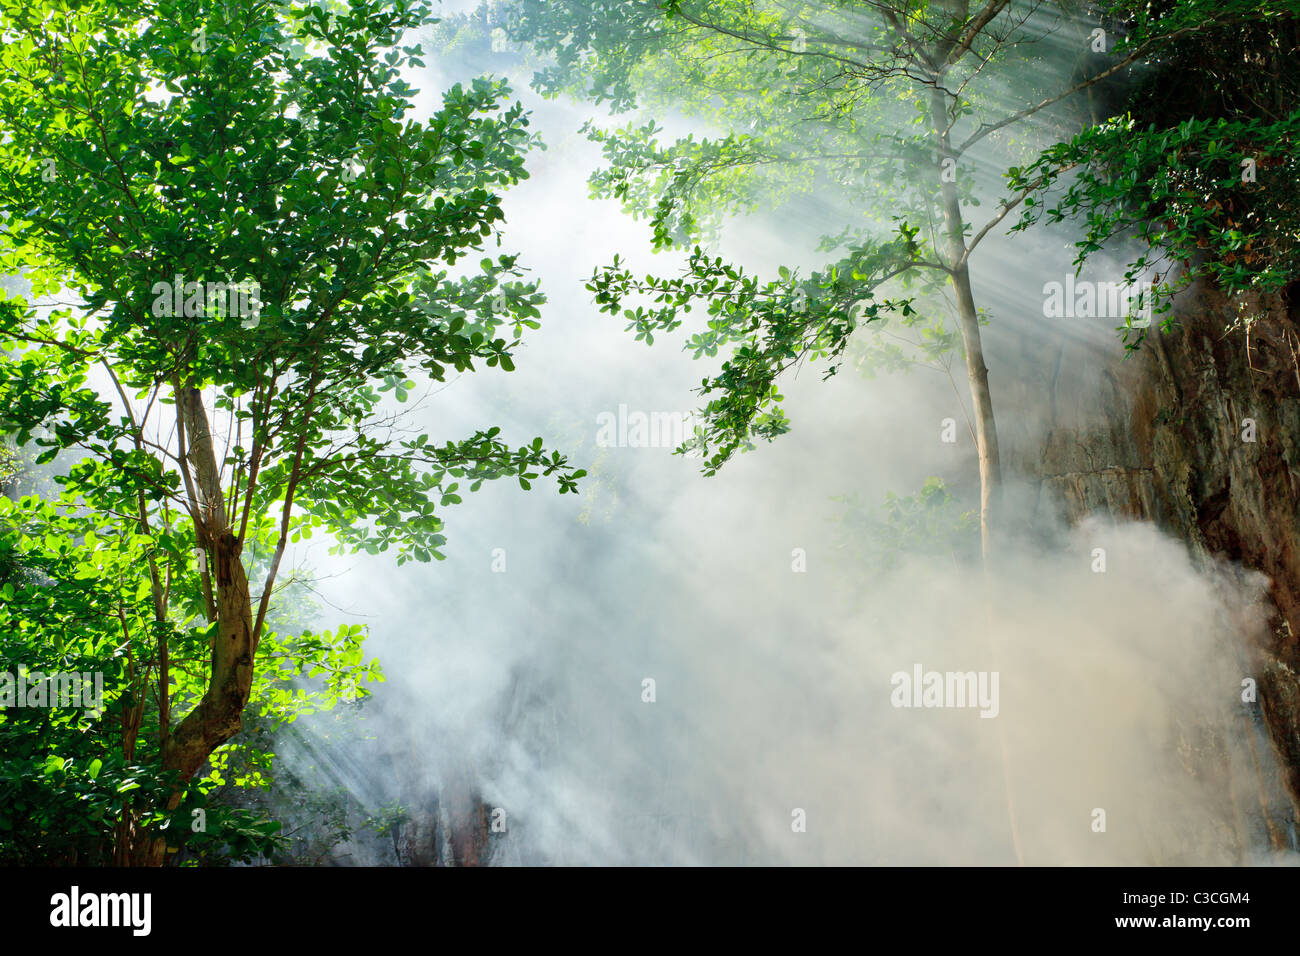 Morgen Sonnenstrahl und Rauch im tropischen Regenwald, Ko Laoliang Insel, thailand Stockfoto